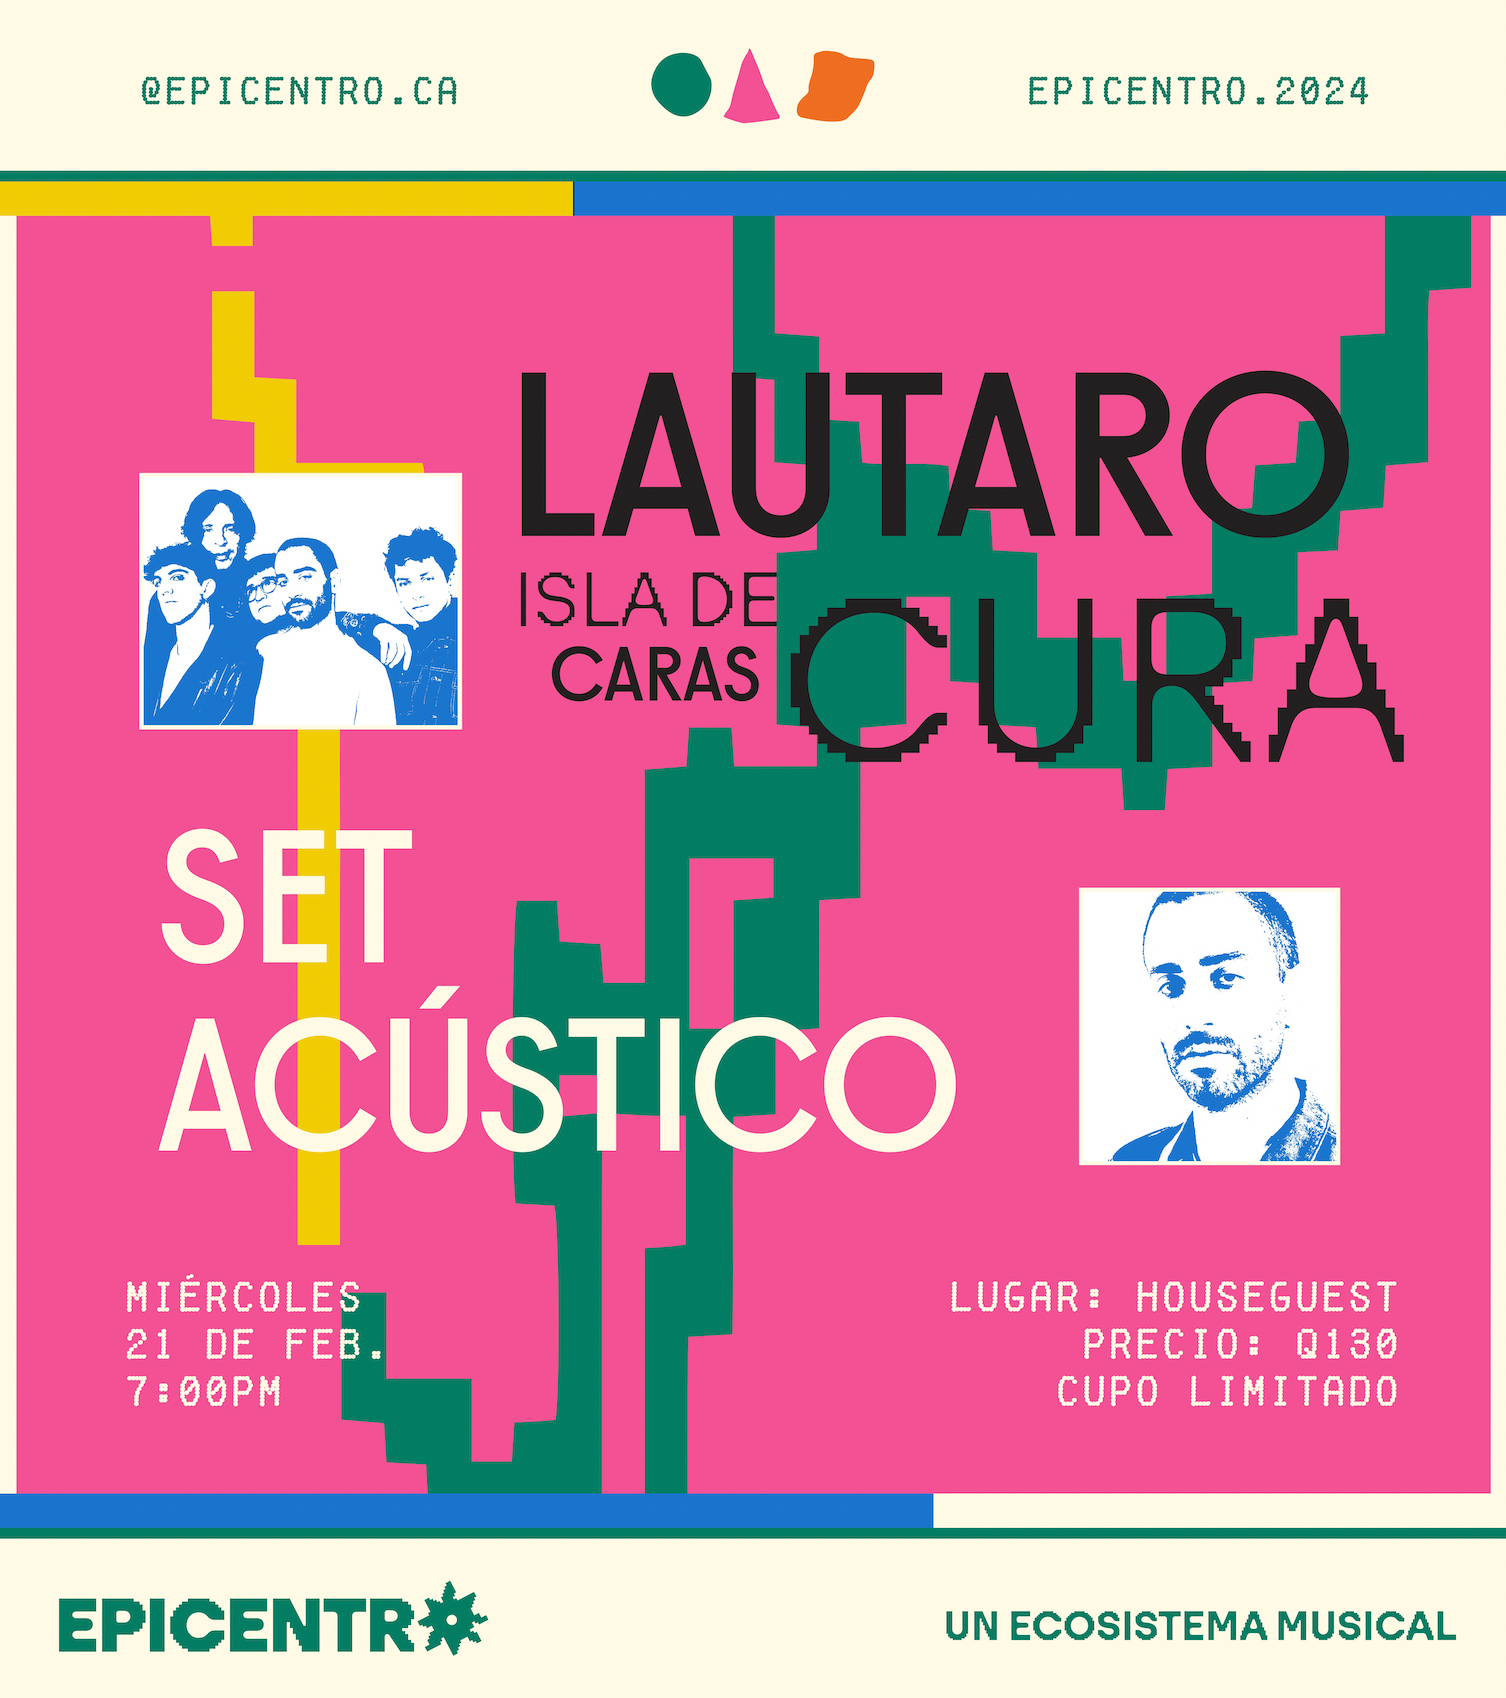 Lautaro Cura / Isla de Caras Set Acústico